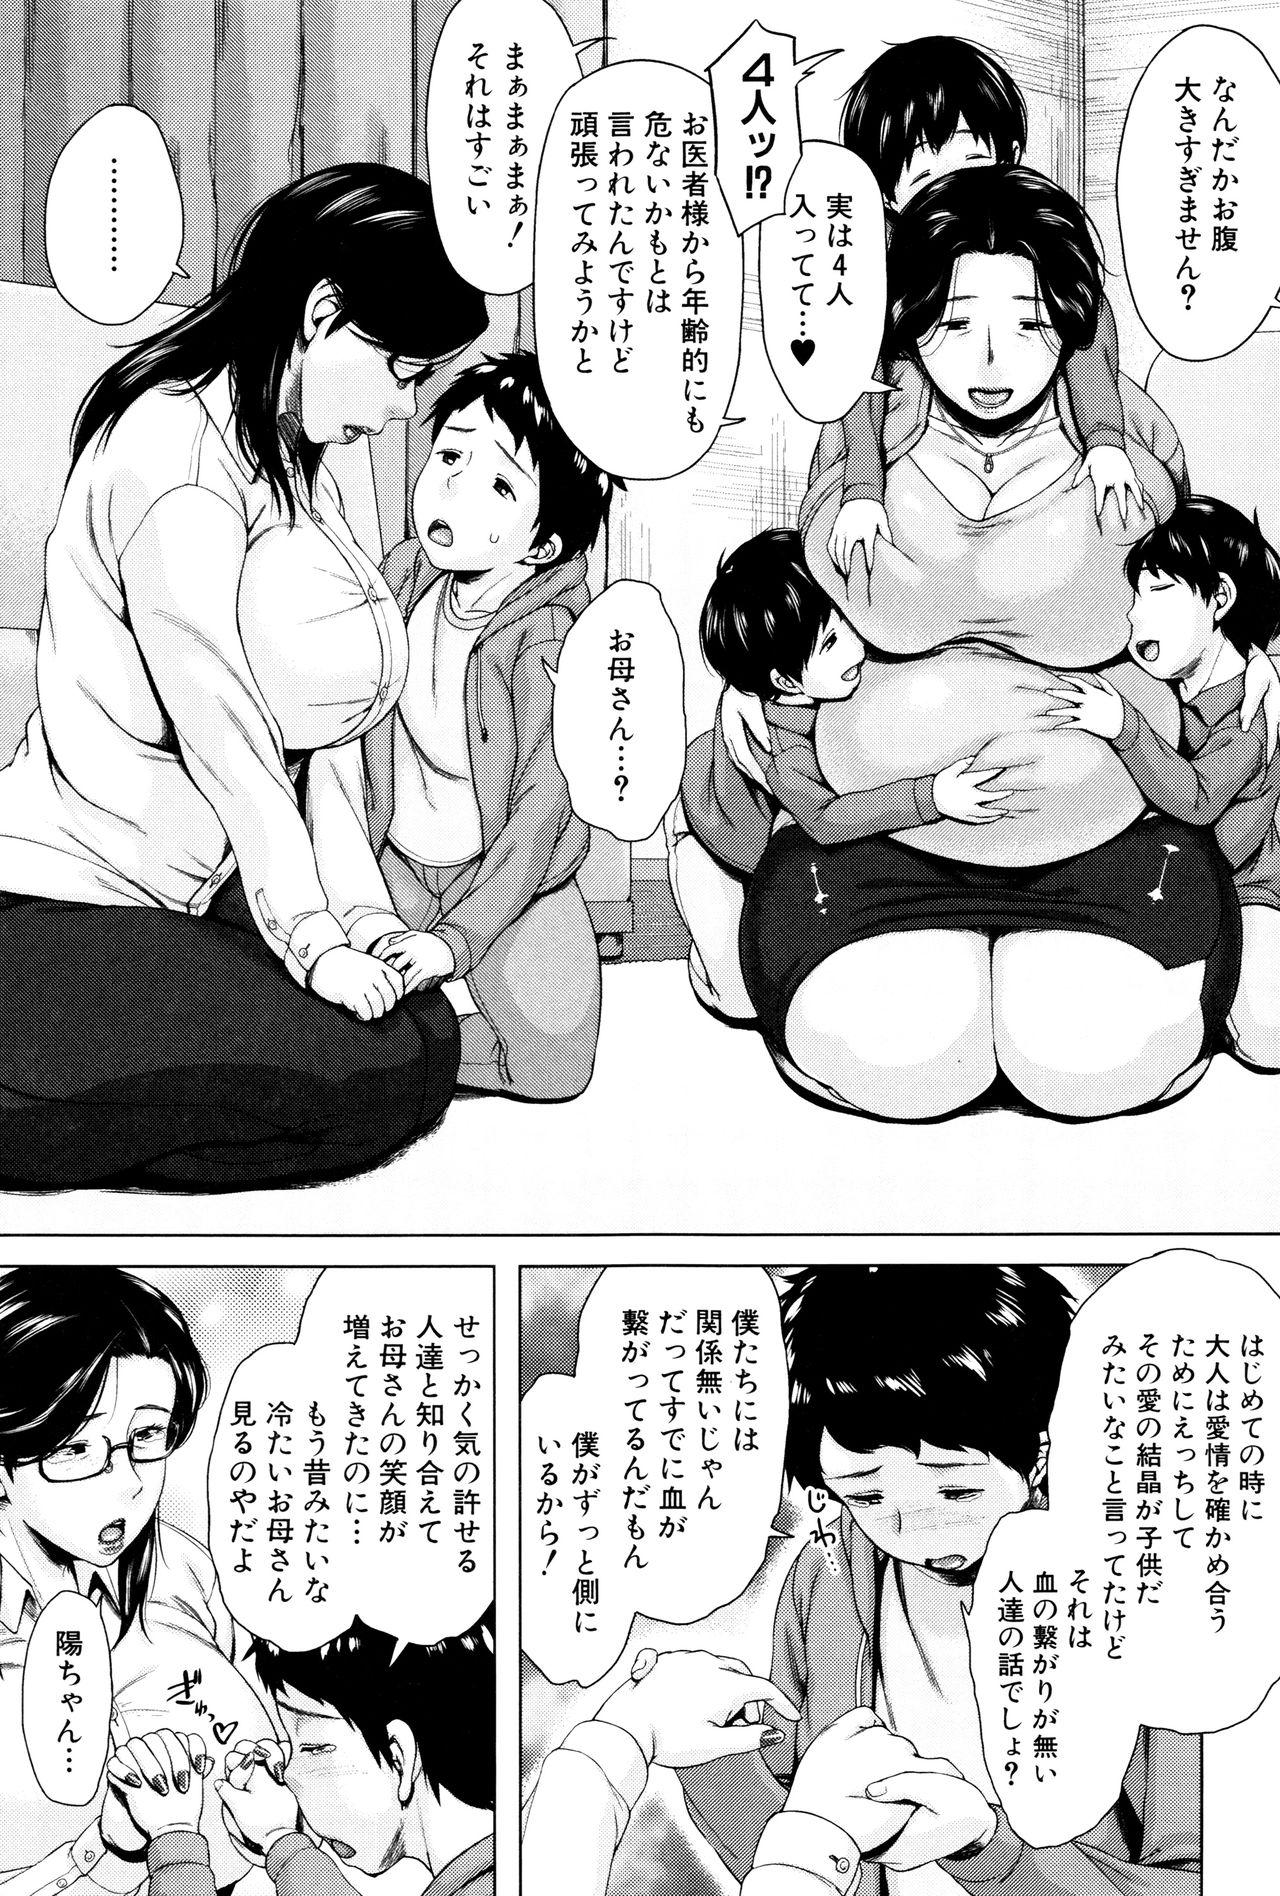 [Jitsuma] Kinyoubi no Haha-tachi e - To Friday's mothers 195